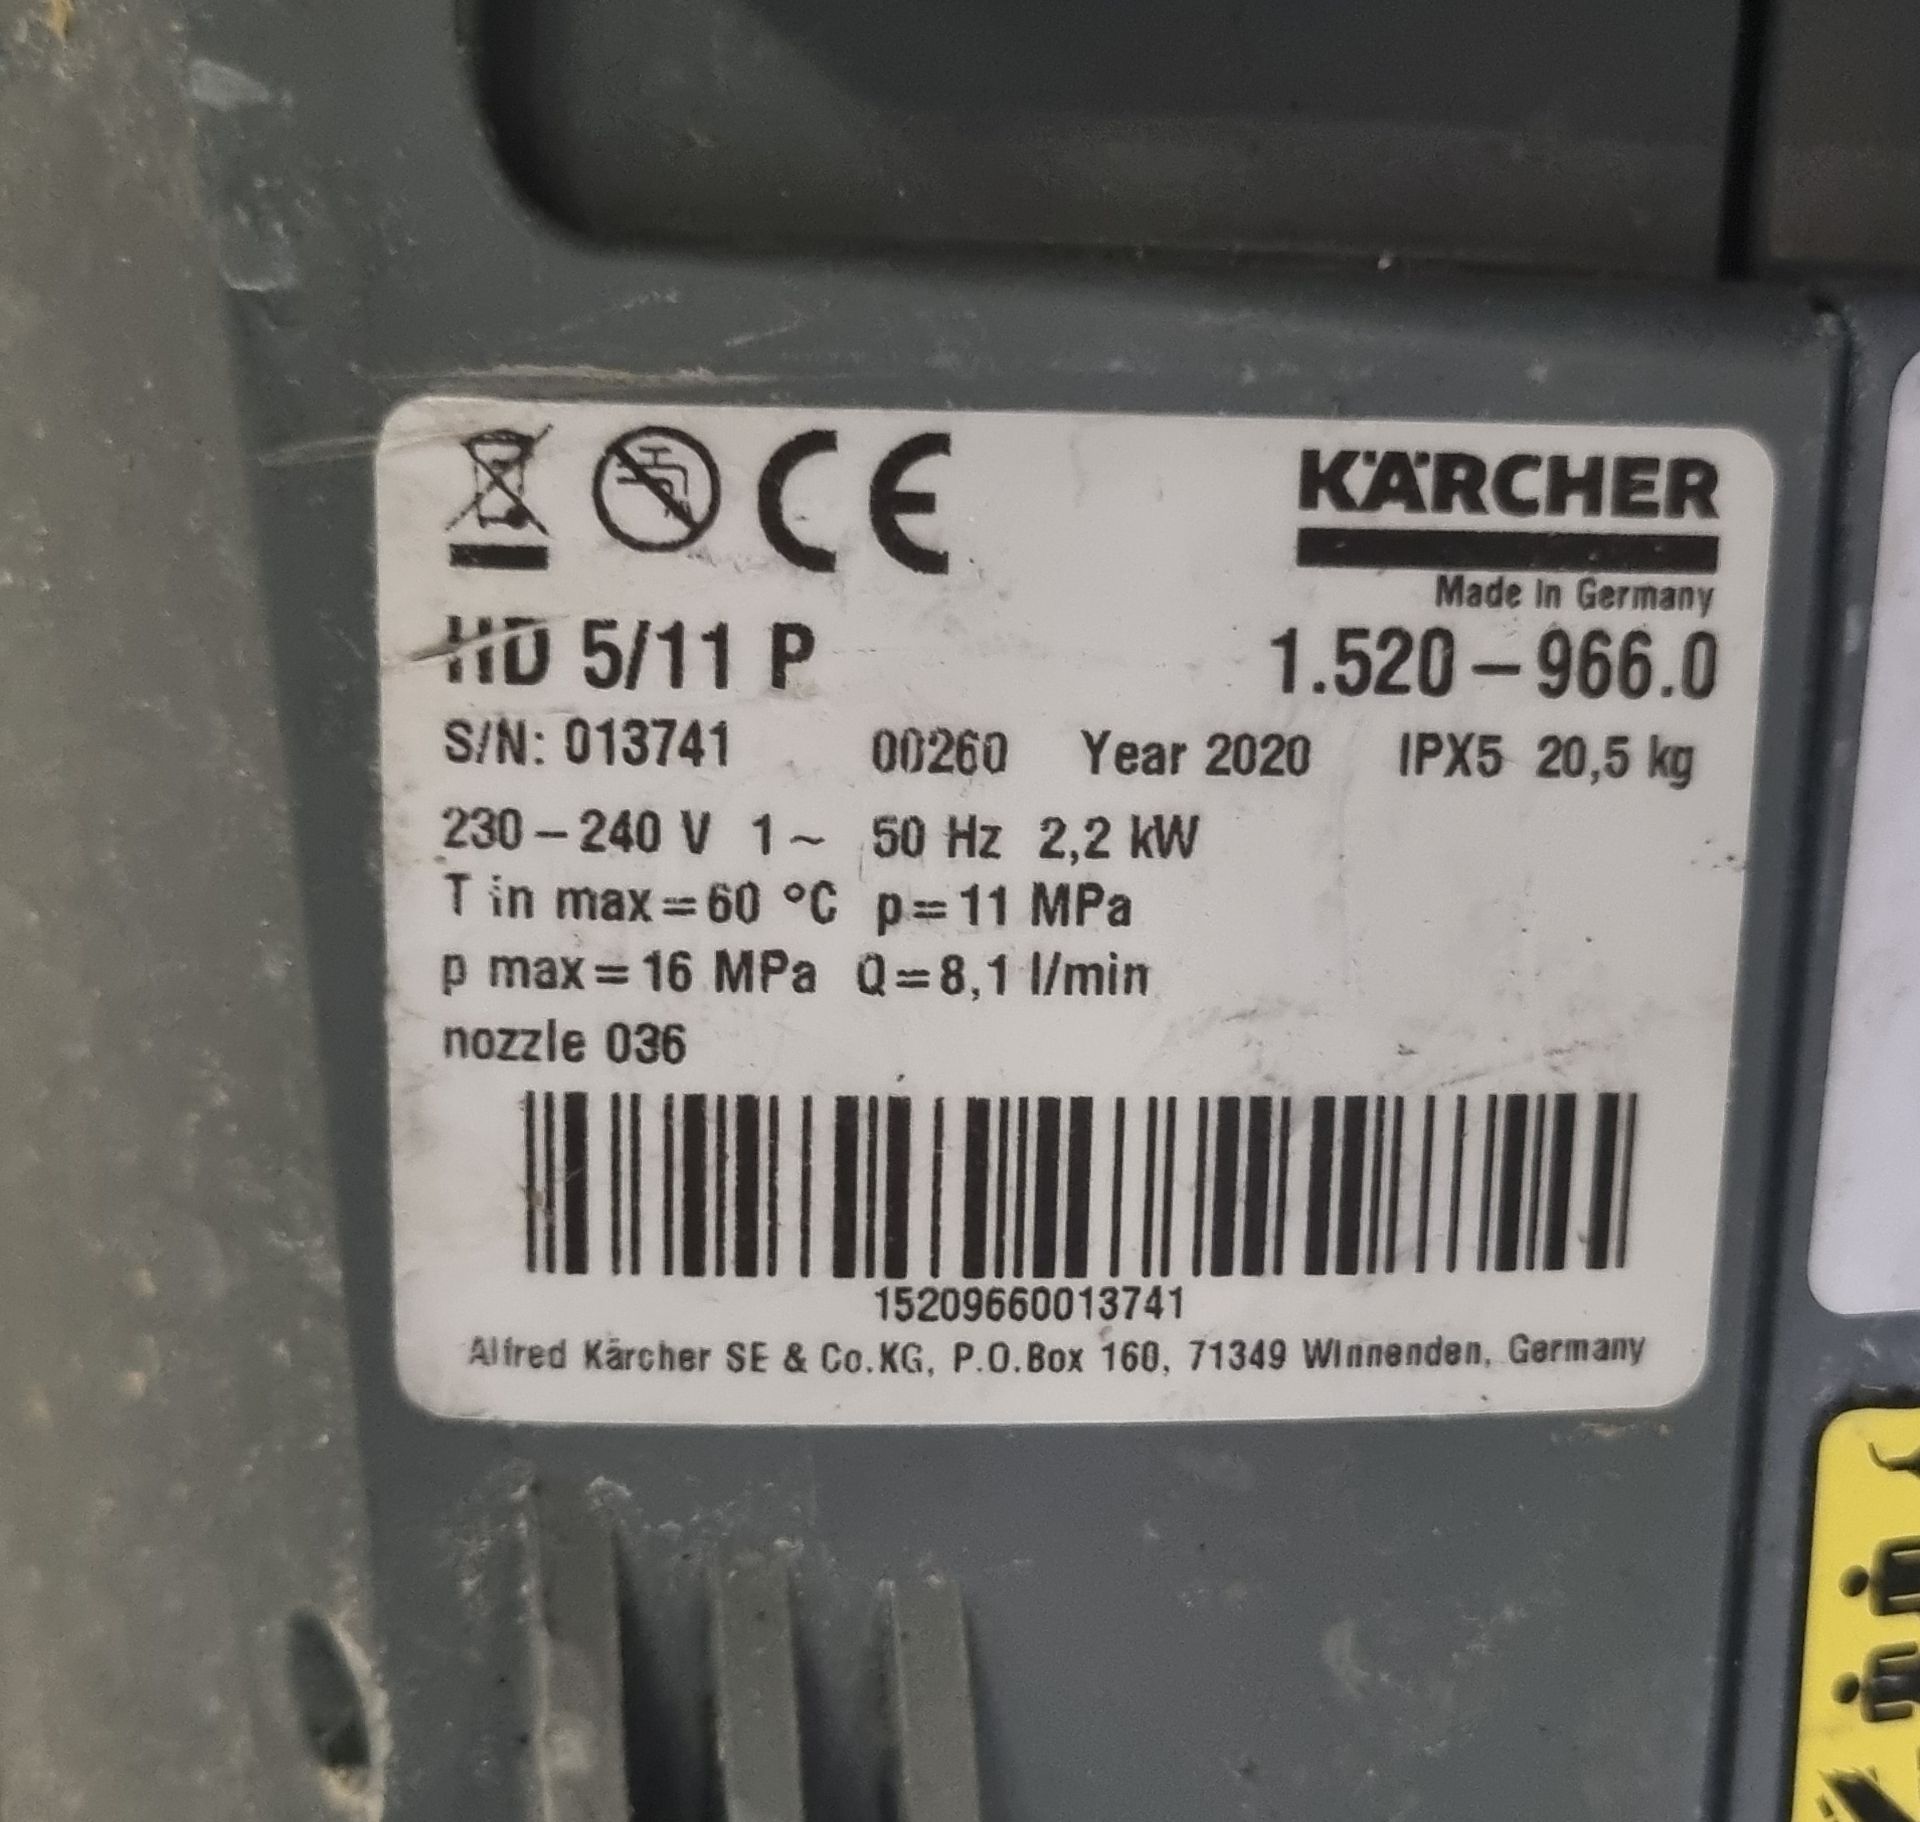 Karcher Professional HD 5/11 P 240V pressure washer - Image 5 of 5